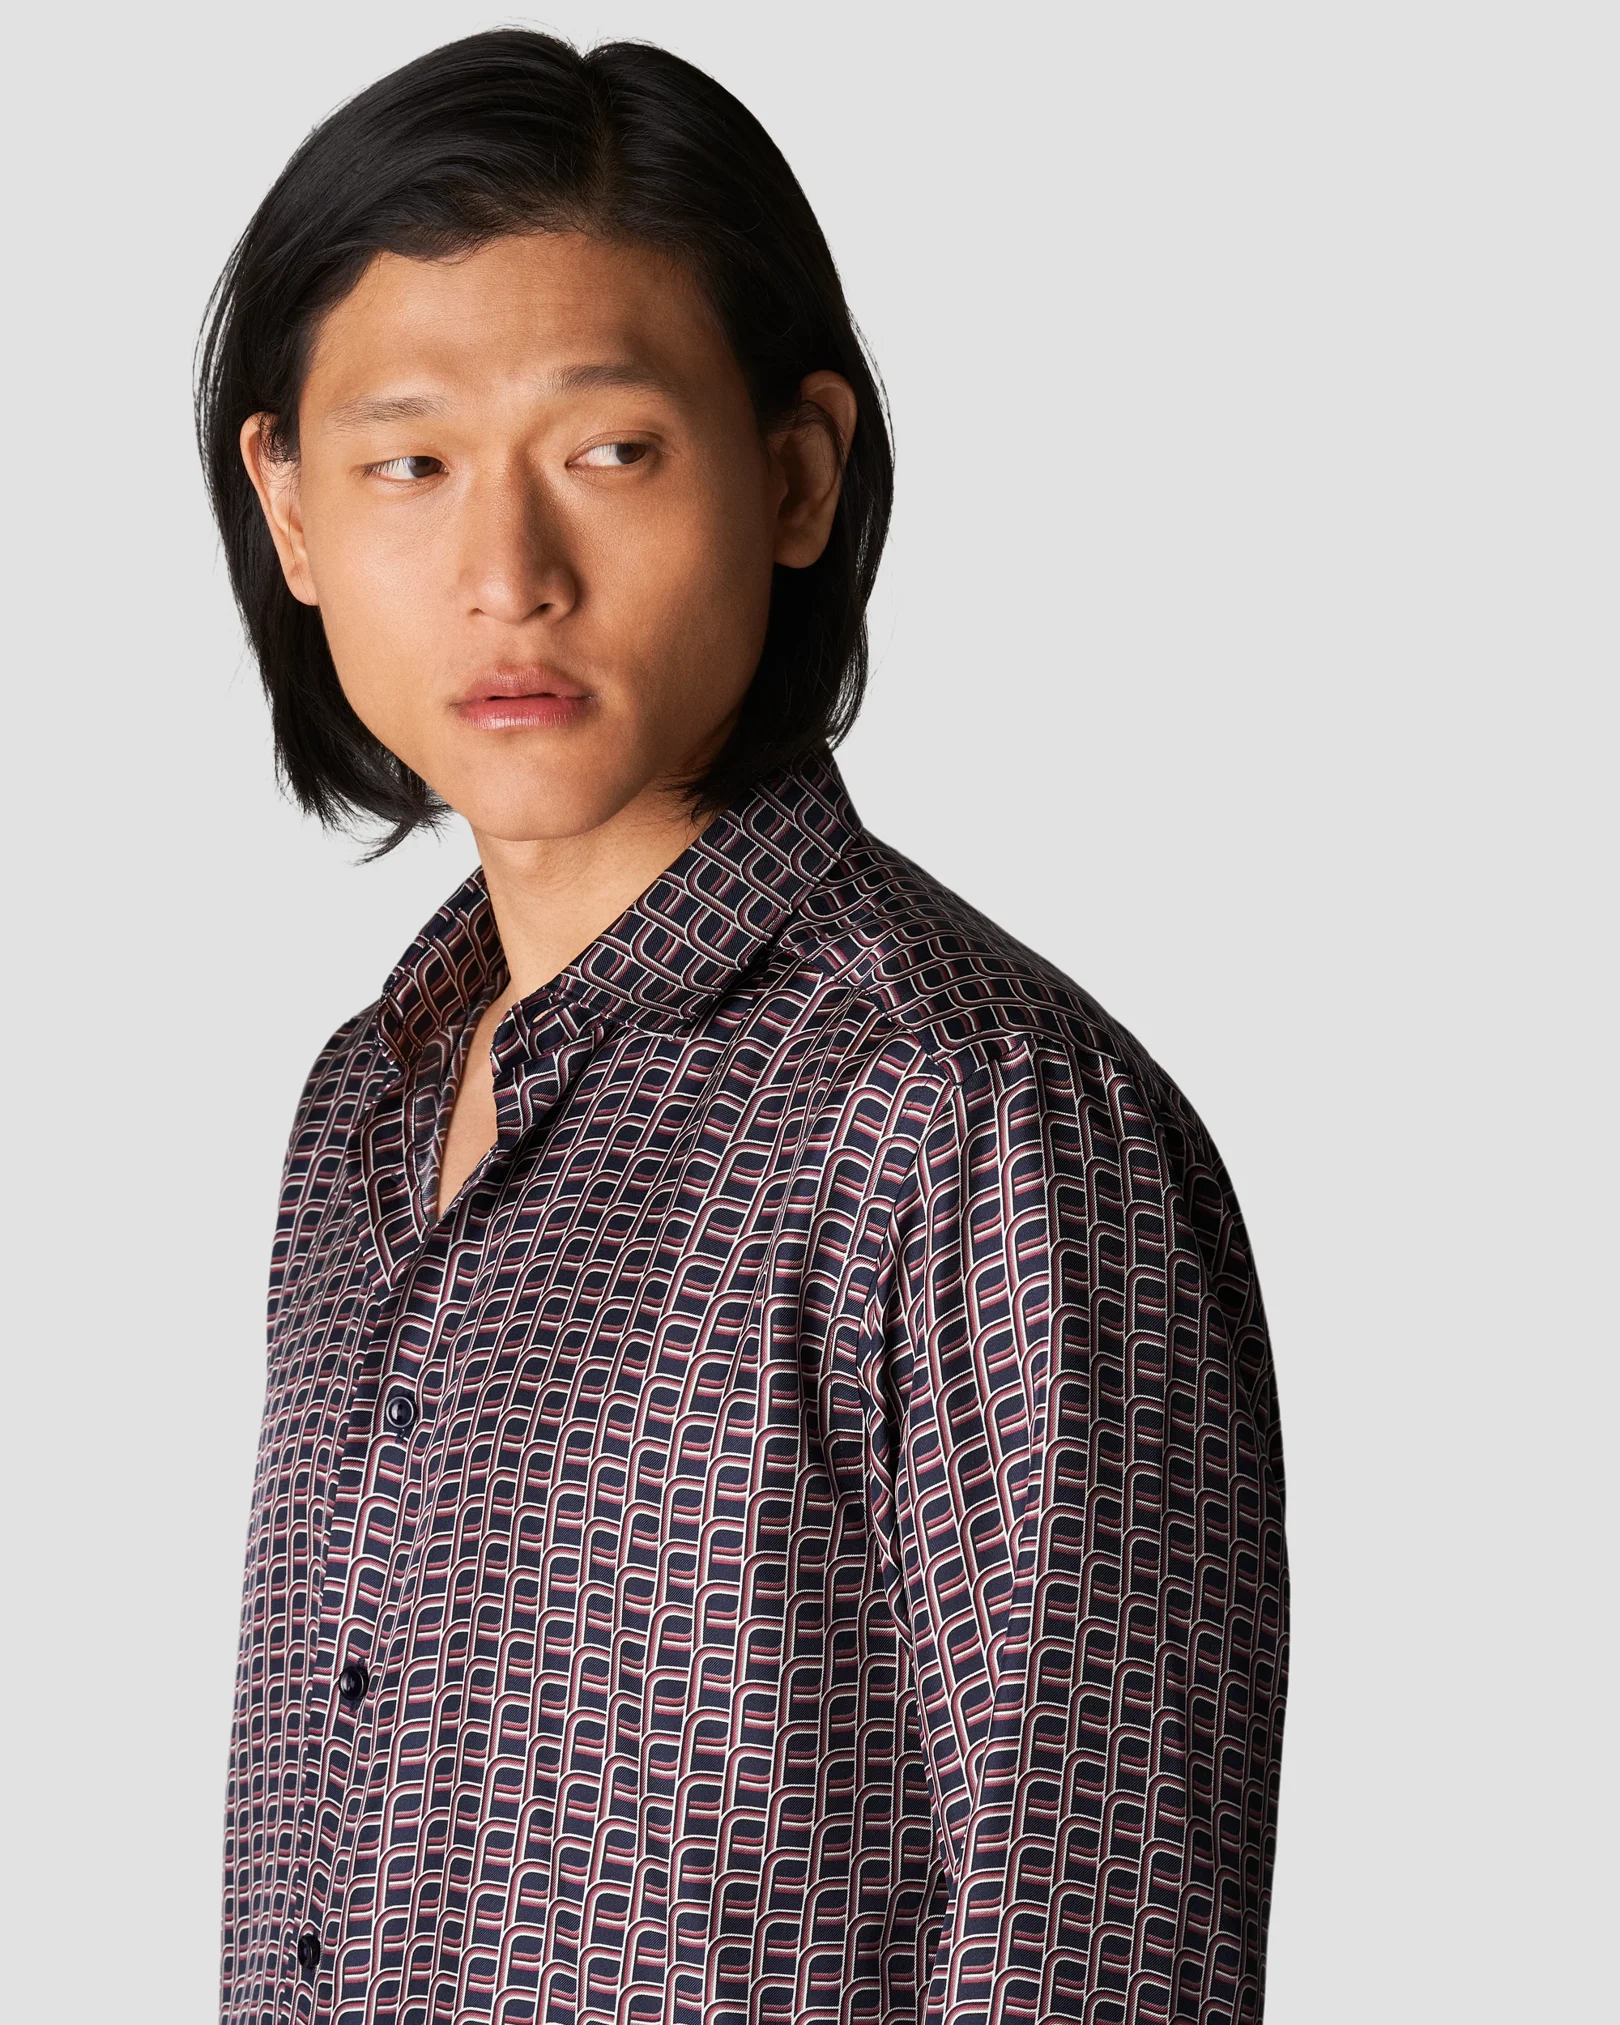 Eton - printed silk shirt